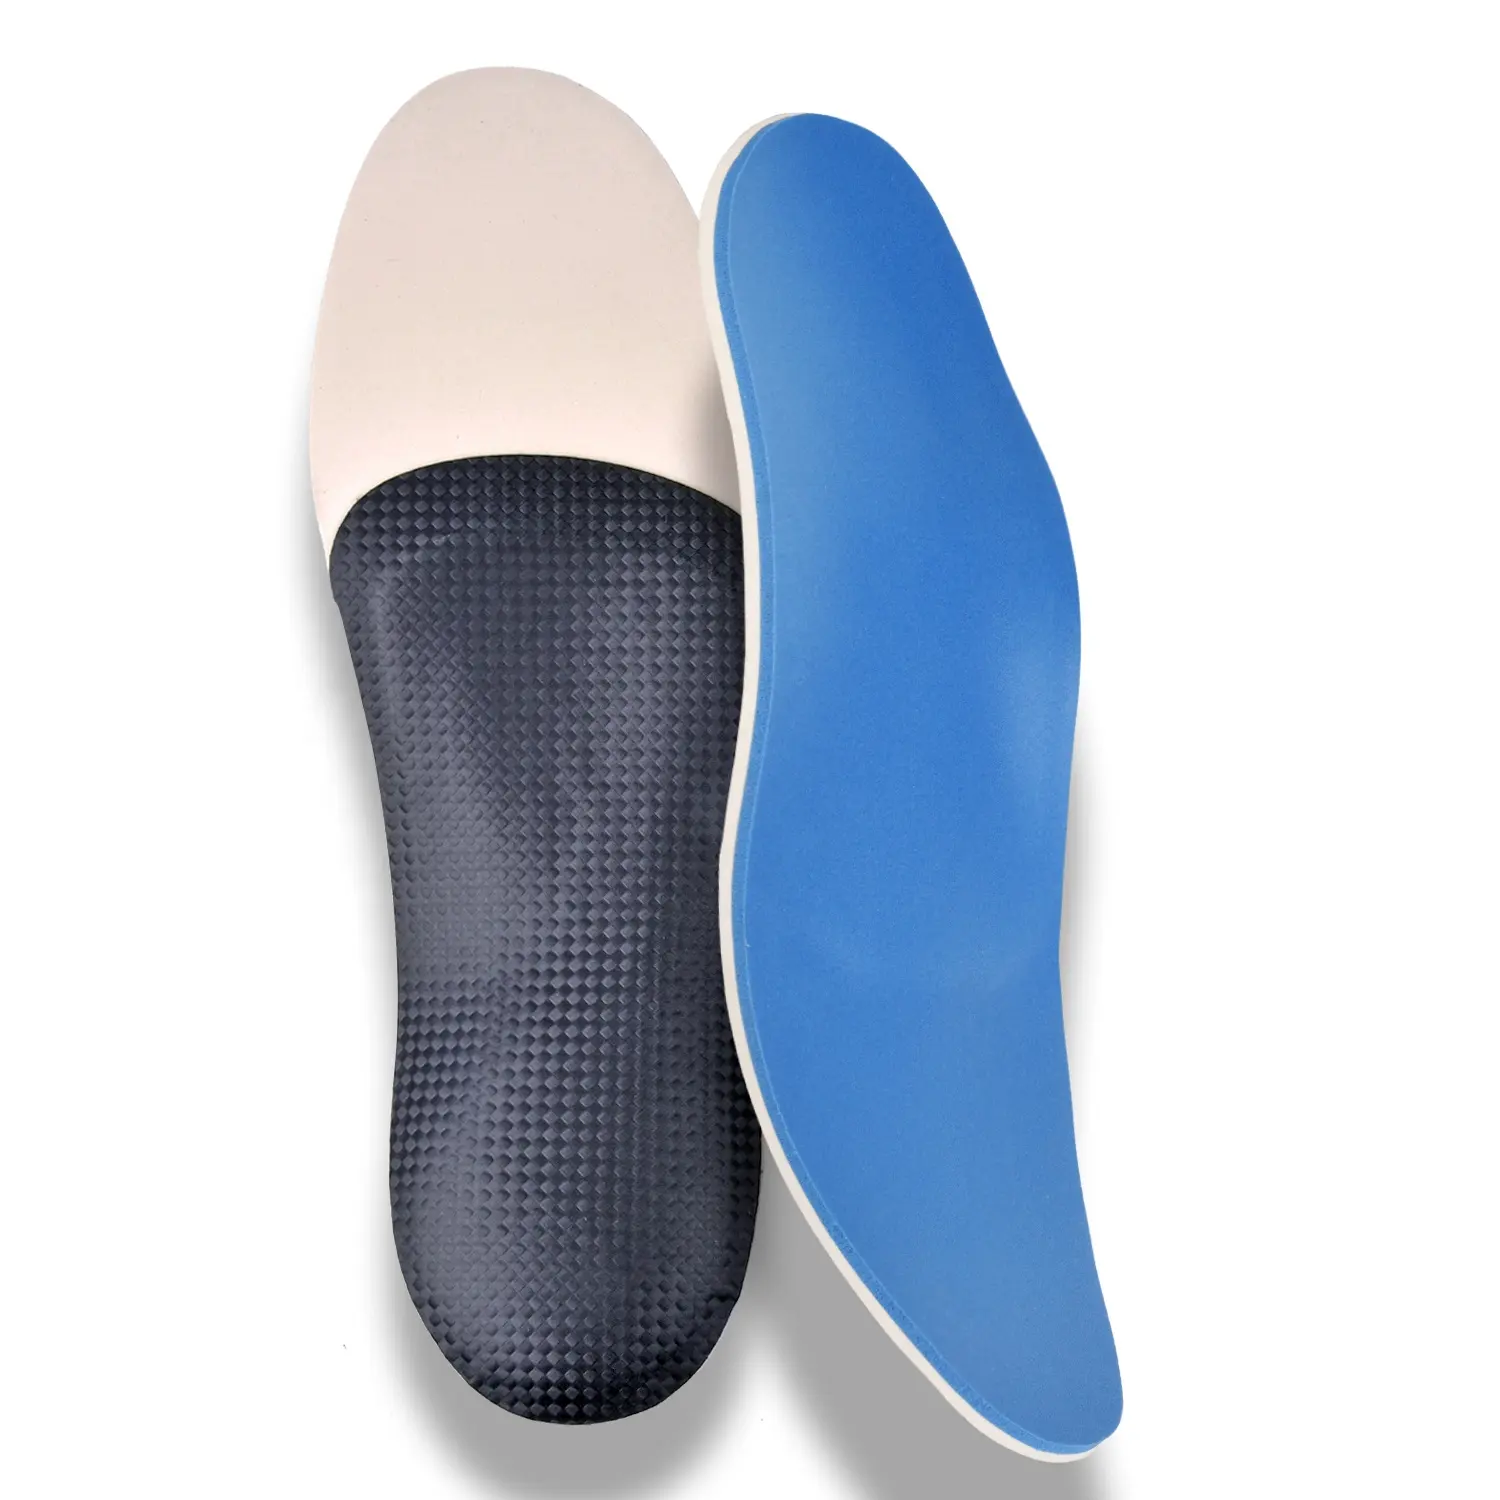 พื้นรองเท้าเทอร์โมพลาสติกแบบมีอุปกรณ์เสริมปรับให้ความร้อนได้ EVA แบบสะท้อนกลับได้สูงสีน้ำเงินกายอุปกรณ์เสริม P5NP